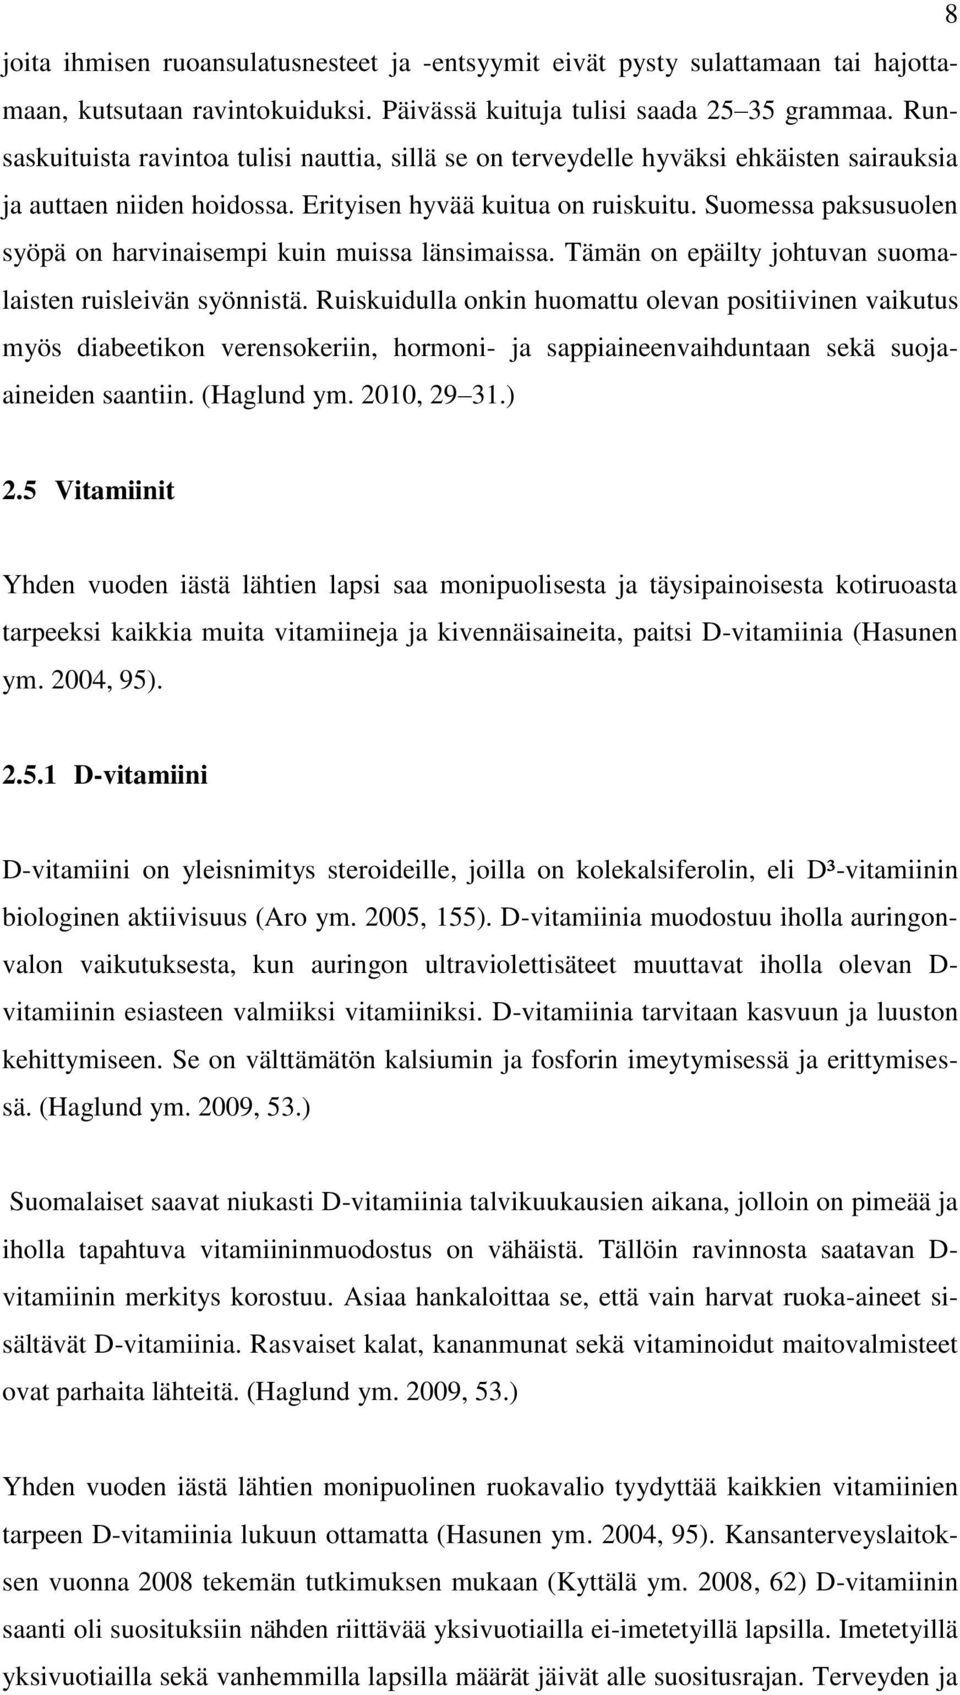 Suomessa paksusuolen syöpä on harvinaisempi kuin muissa länsimaissa. Tämän on epäilty johtuvan suomalaisten ruisleivän syönnistä.